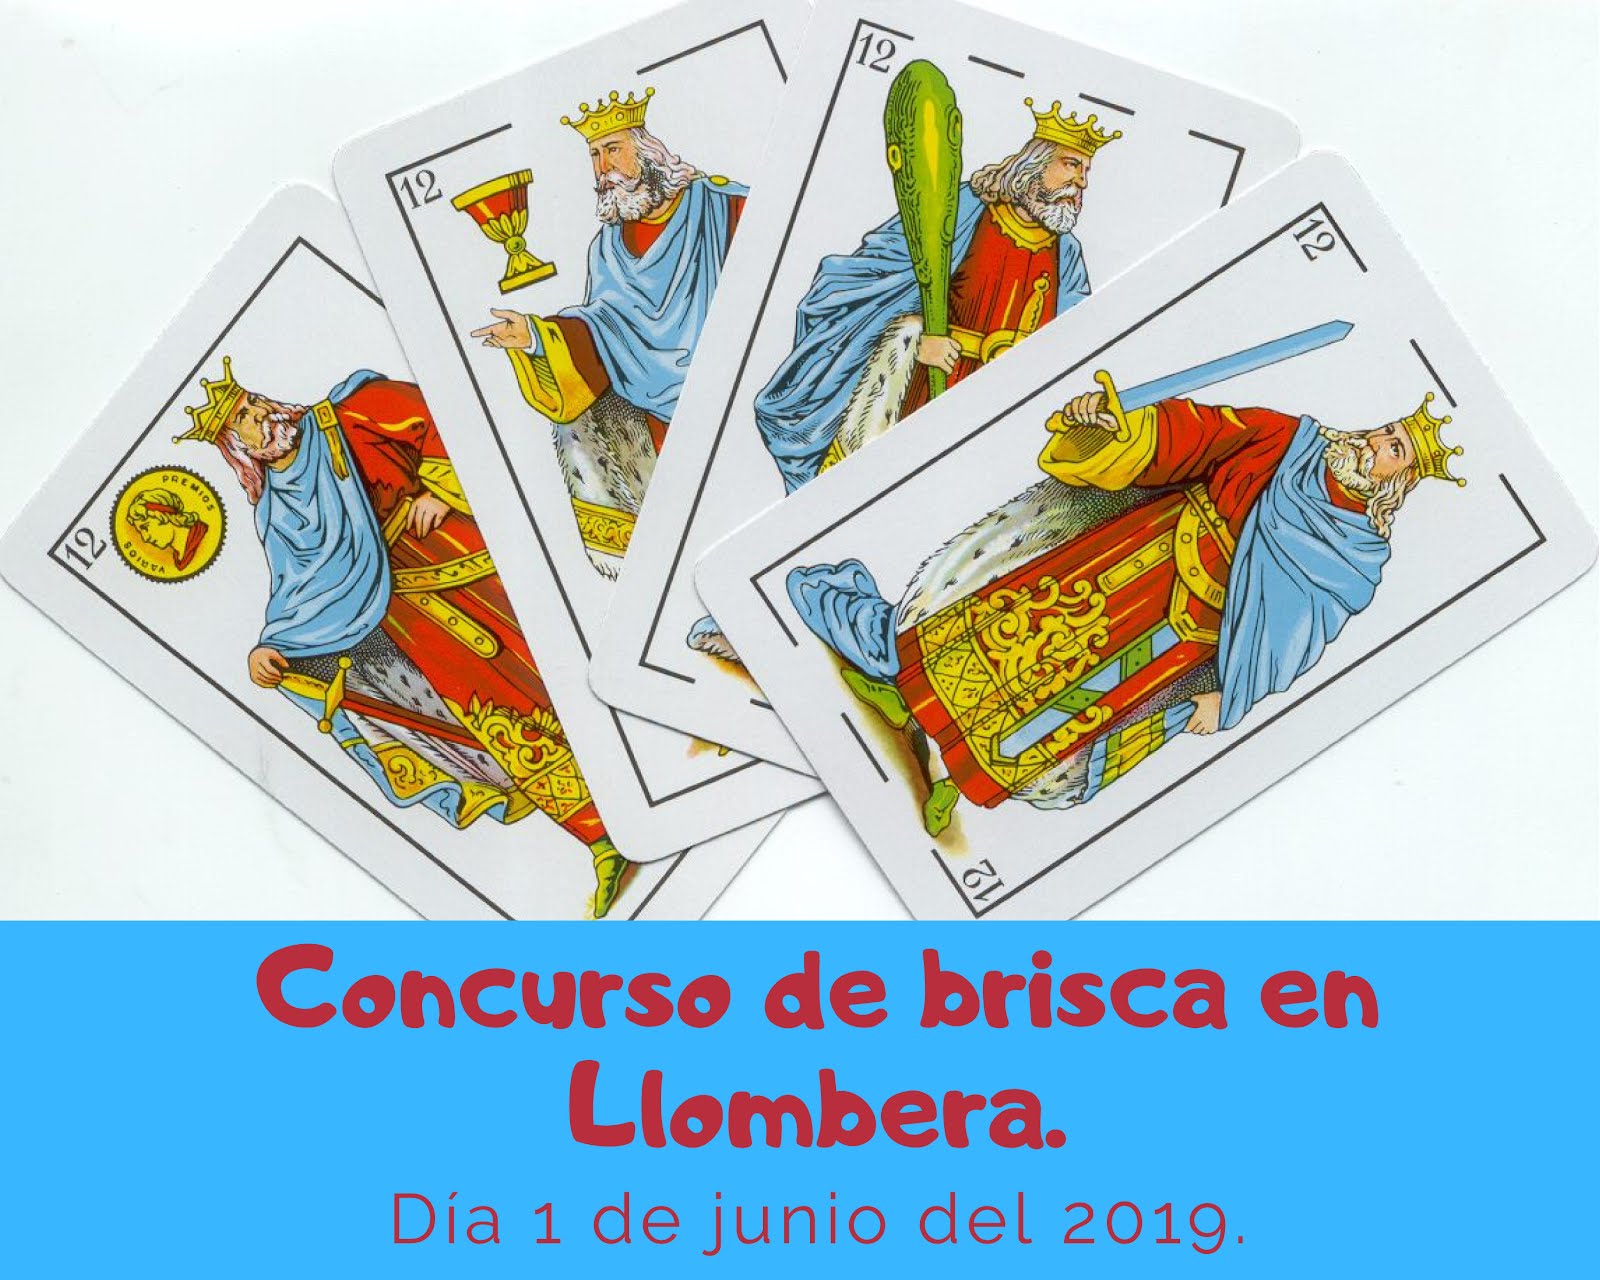 CONCURSO DE BRISCA EN LLOMBERA.